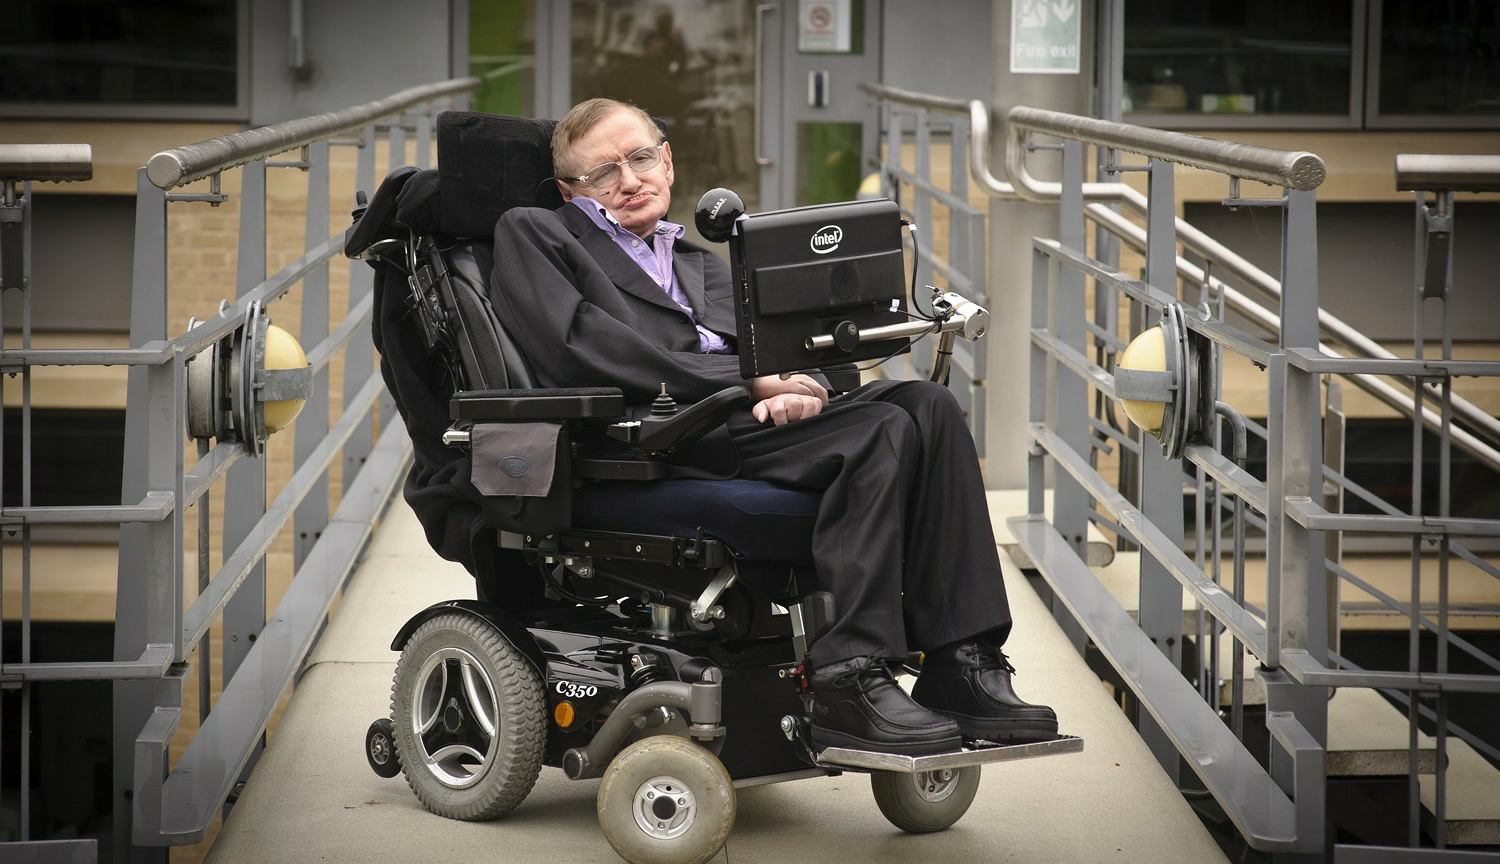 z17546511IER-Hawking-Krotka-historia-.jpg